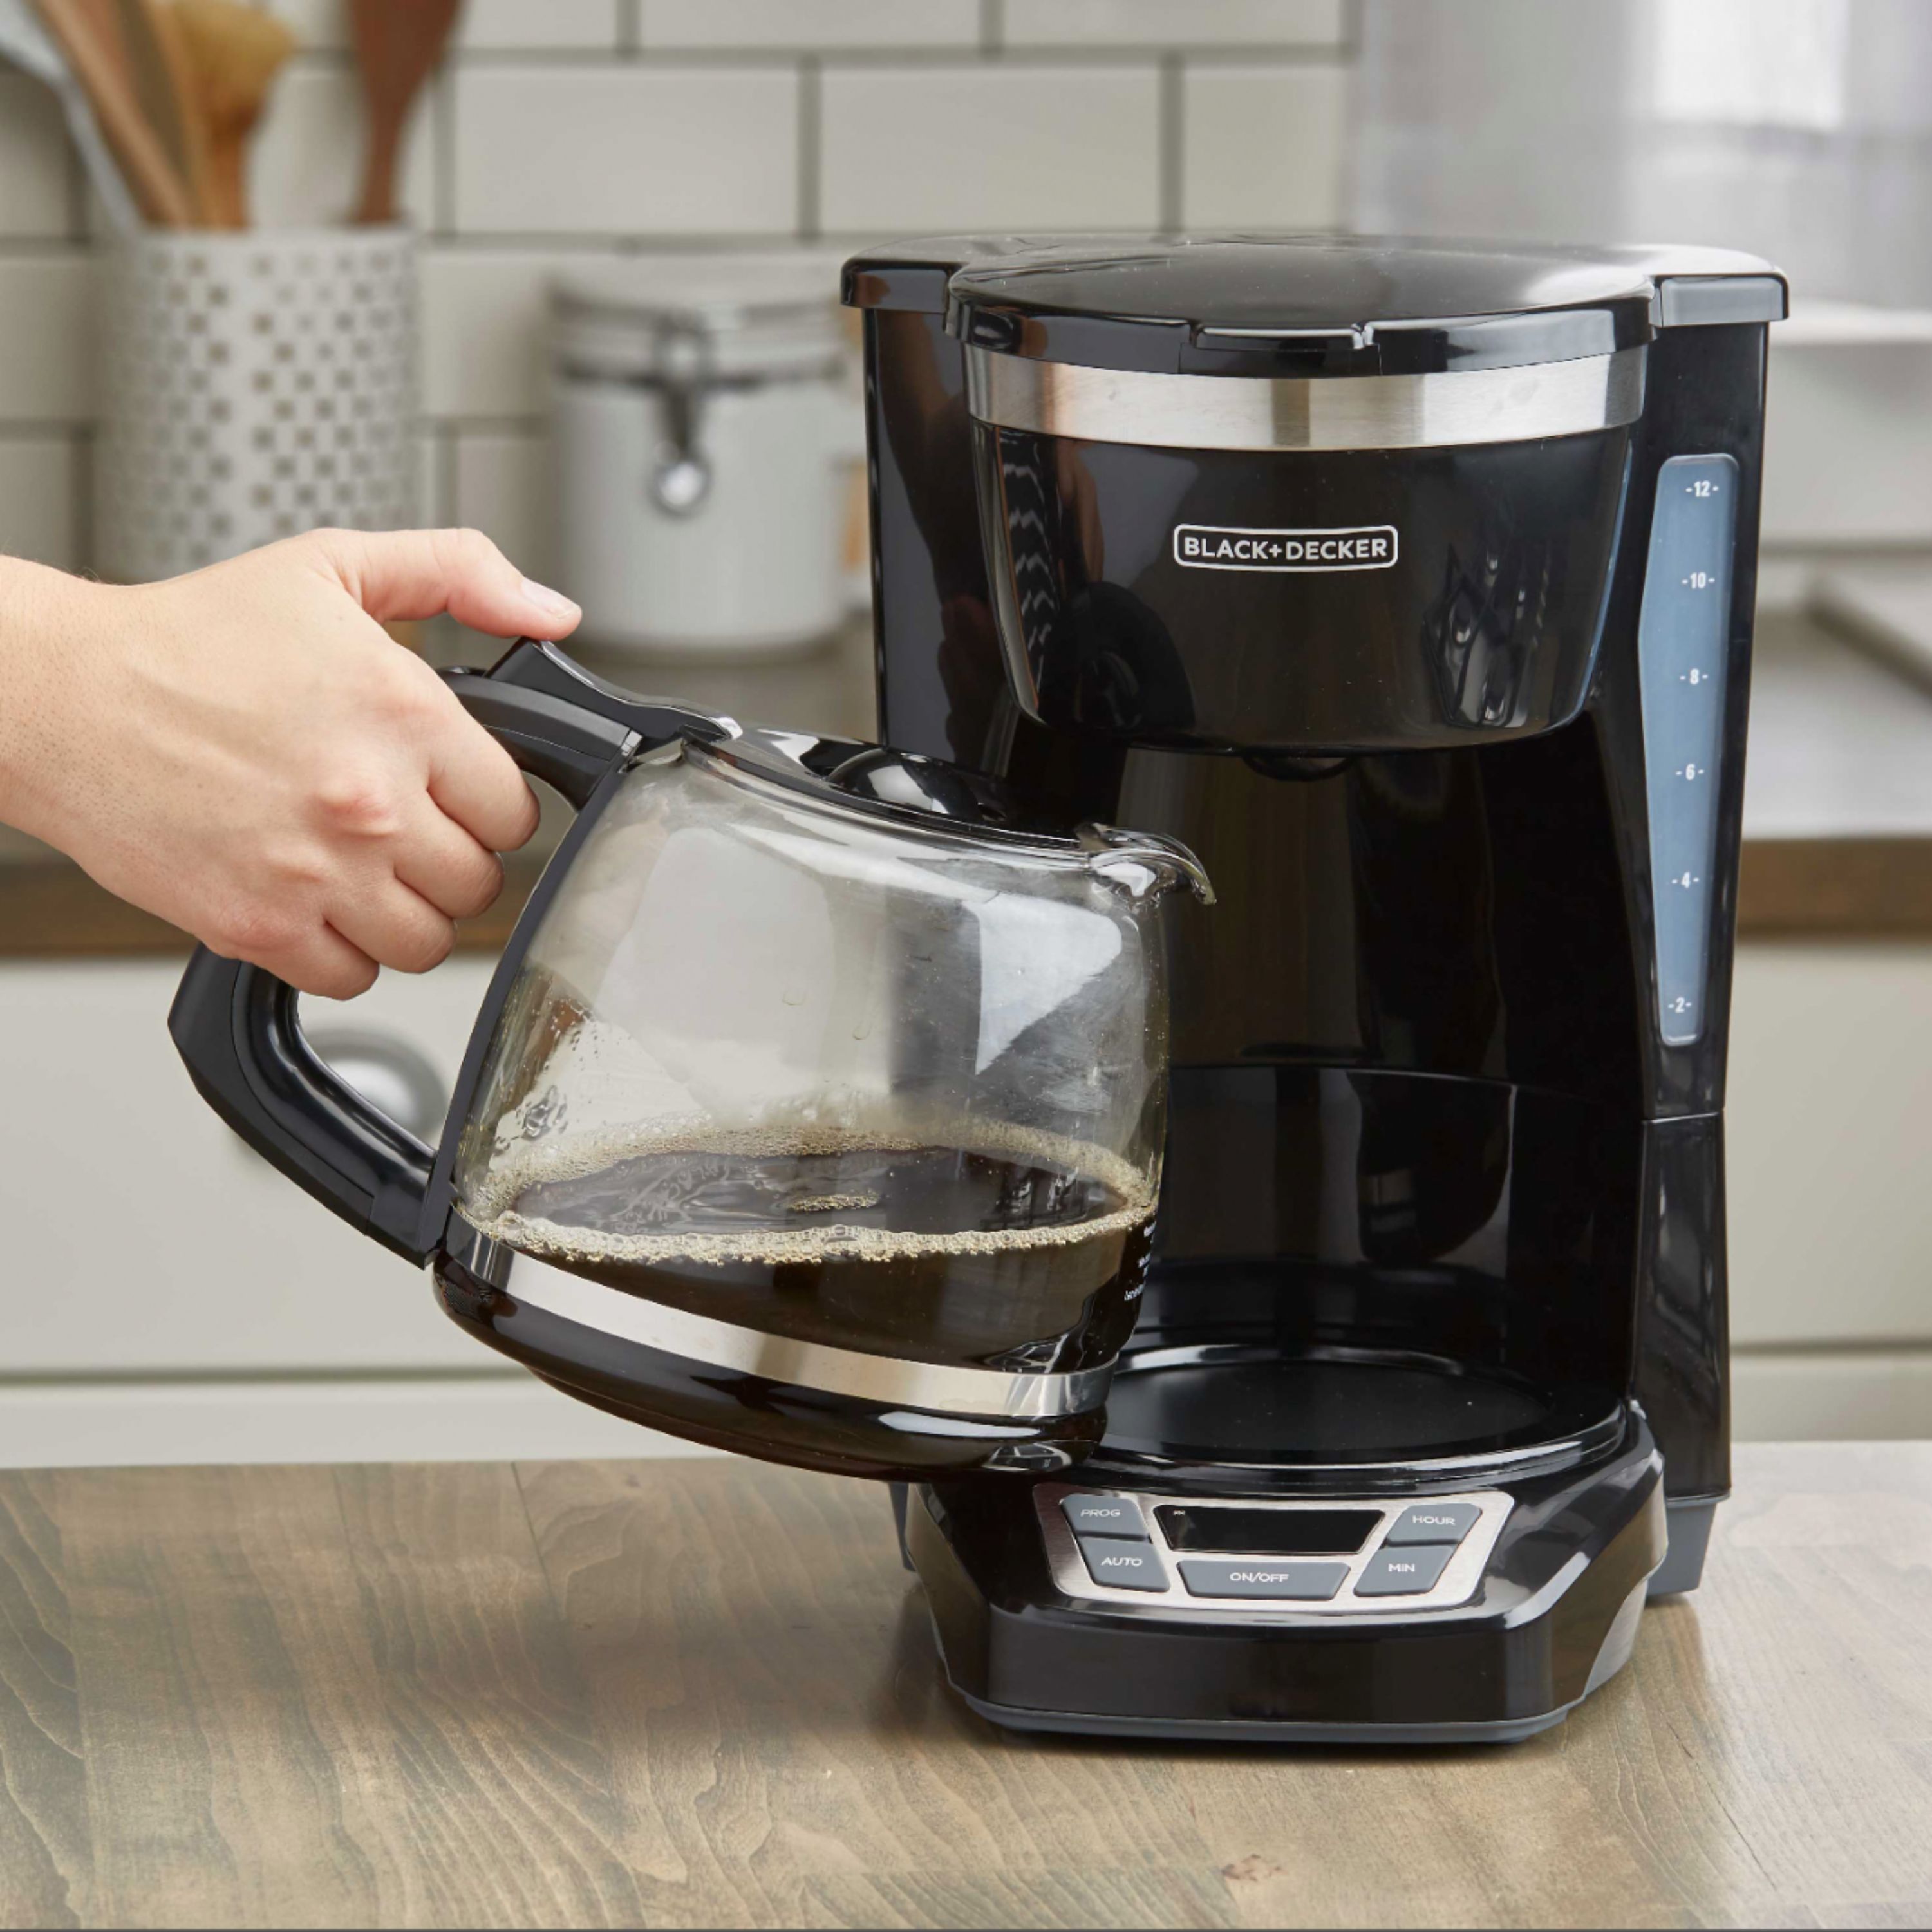 Black + Decker 12-Cup Programmable Coffee Maker